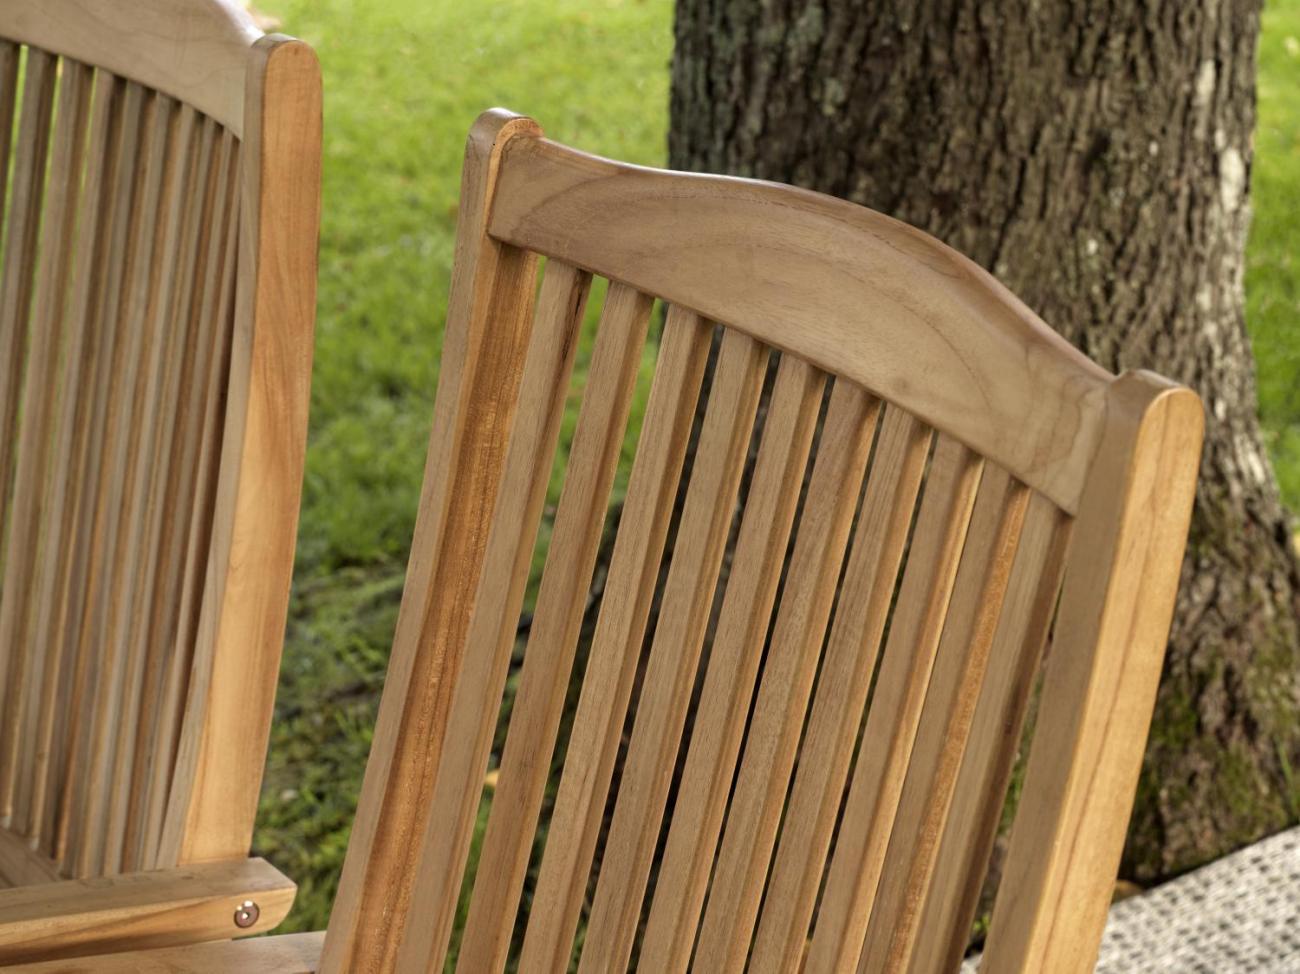 Der Gartenstuhl Veronica überzeugt mit seinem modernen Design. Gefertigt wurde er aus Teakholz, welches einen natürlichen Farbton besitzt. Das Gestell ist auch aus Teakholz und hat eine natürliche Farbe. Die Sitzhöhe des Stuhls beträgt 45 cm.